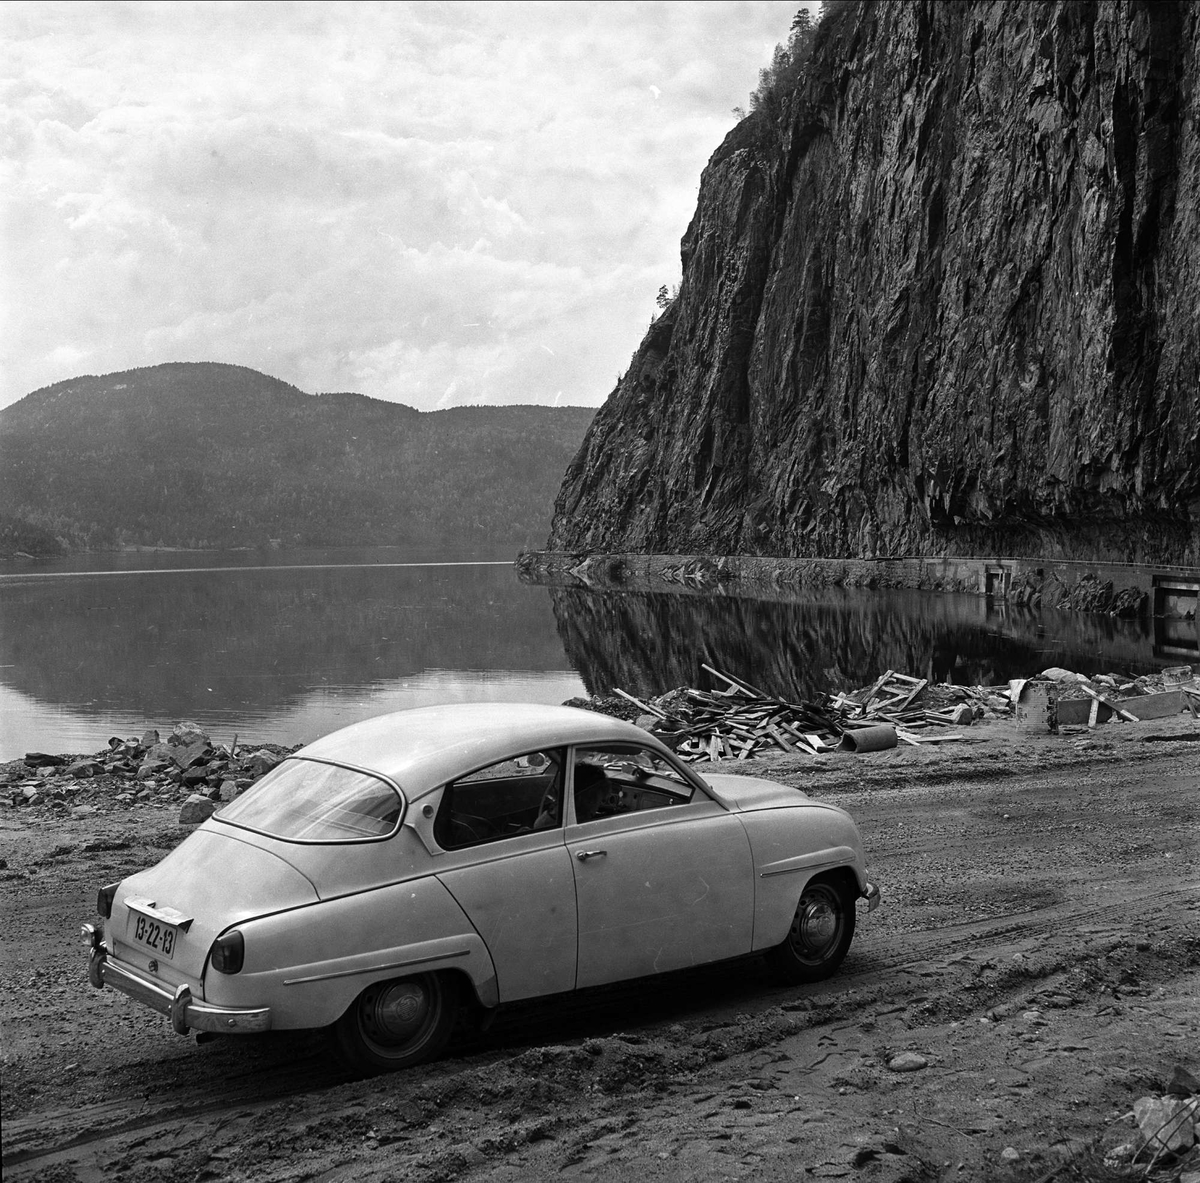 Bygland, Aust-Agder, 30.05.1963. Bil på en vei i landskap med vann.